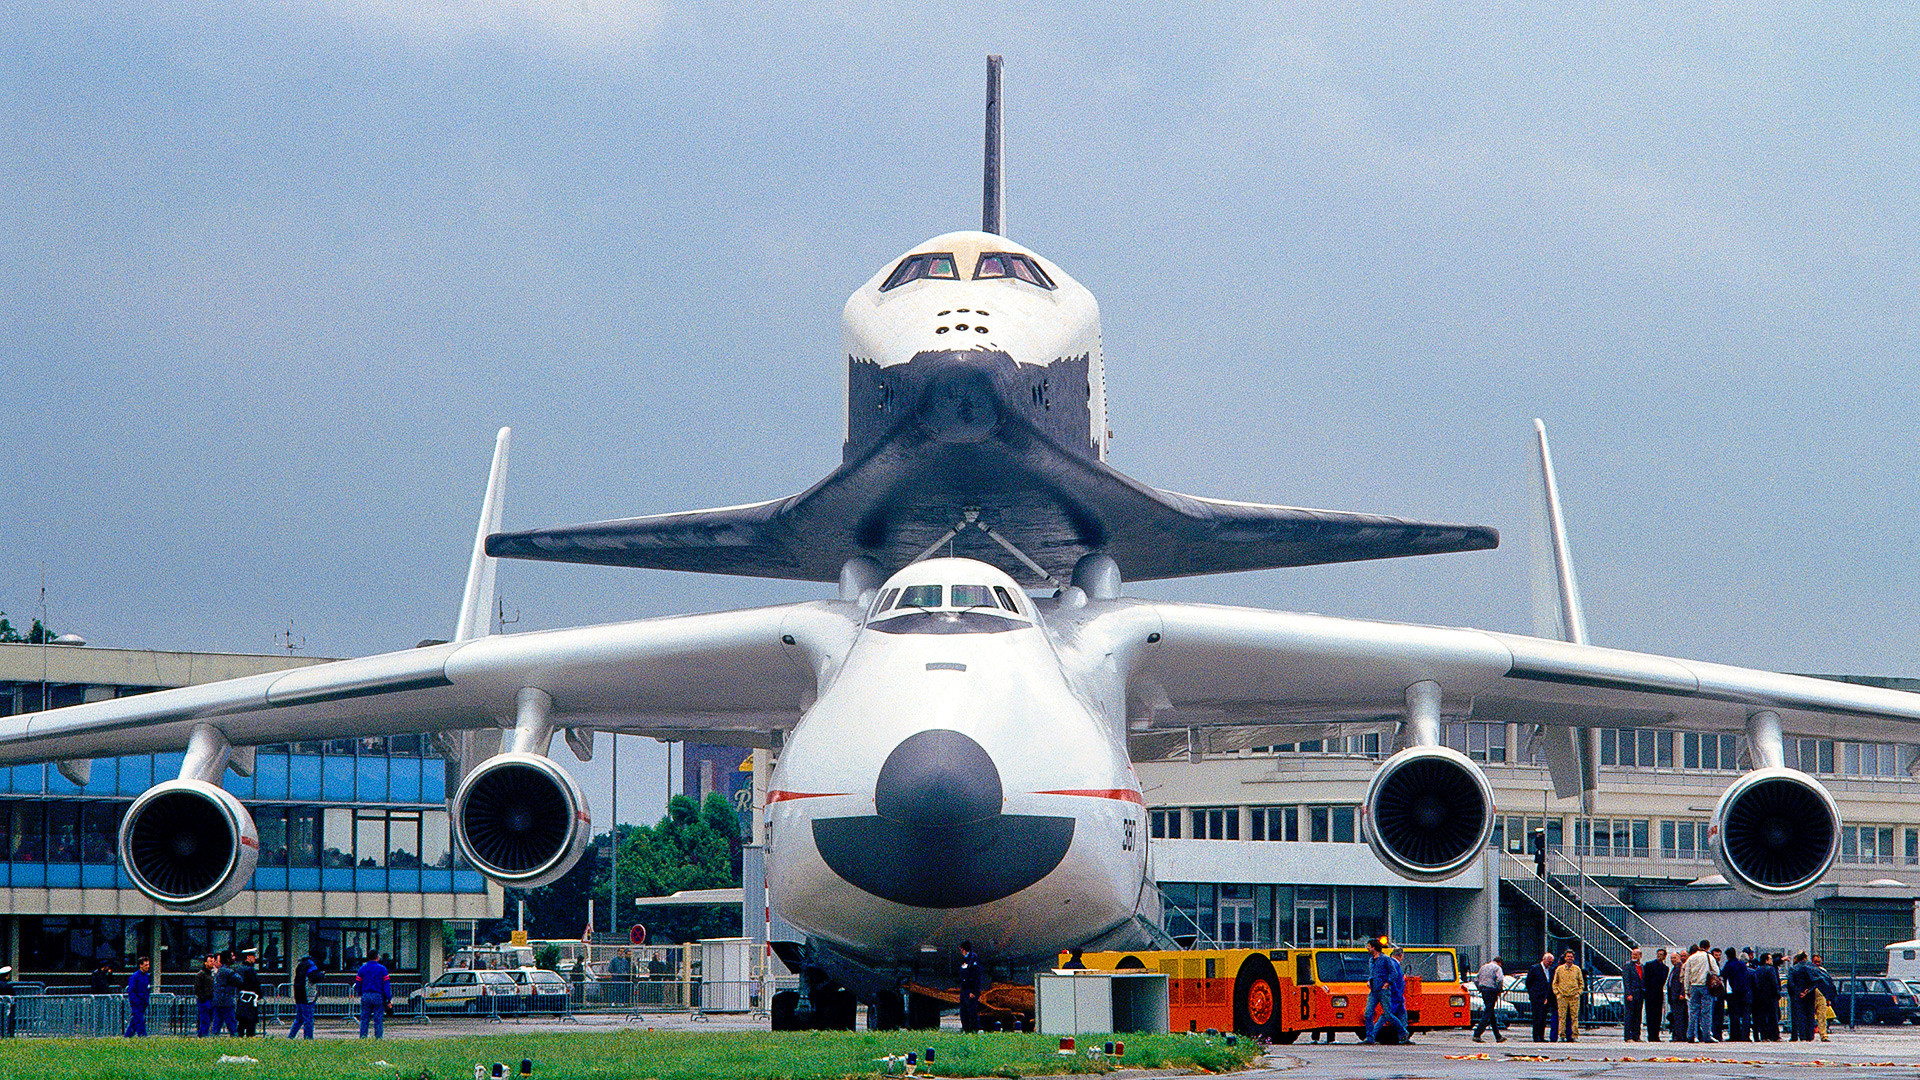 Antonov An-225 Mriya Cossack ditarik mobil penarik dan pendorong pesawat di Paris Airshow 1989 dengan pesawat ulang-alik Buran Soviet di punggungnya.